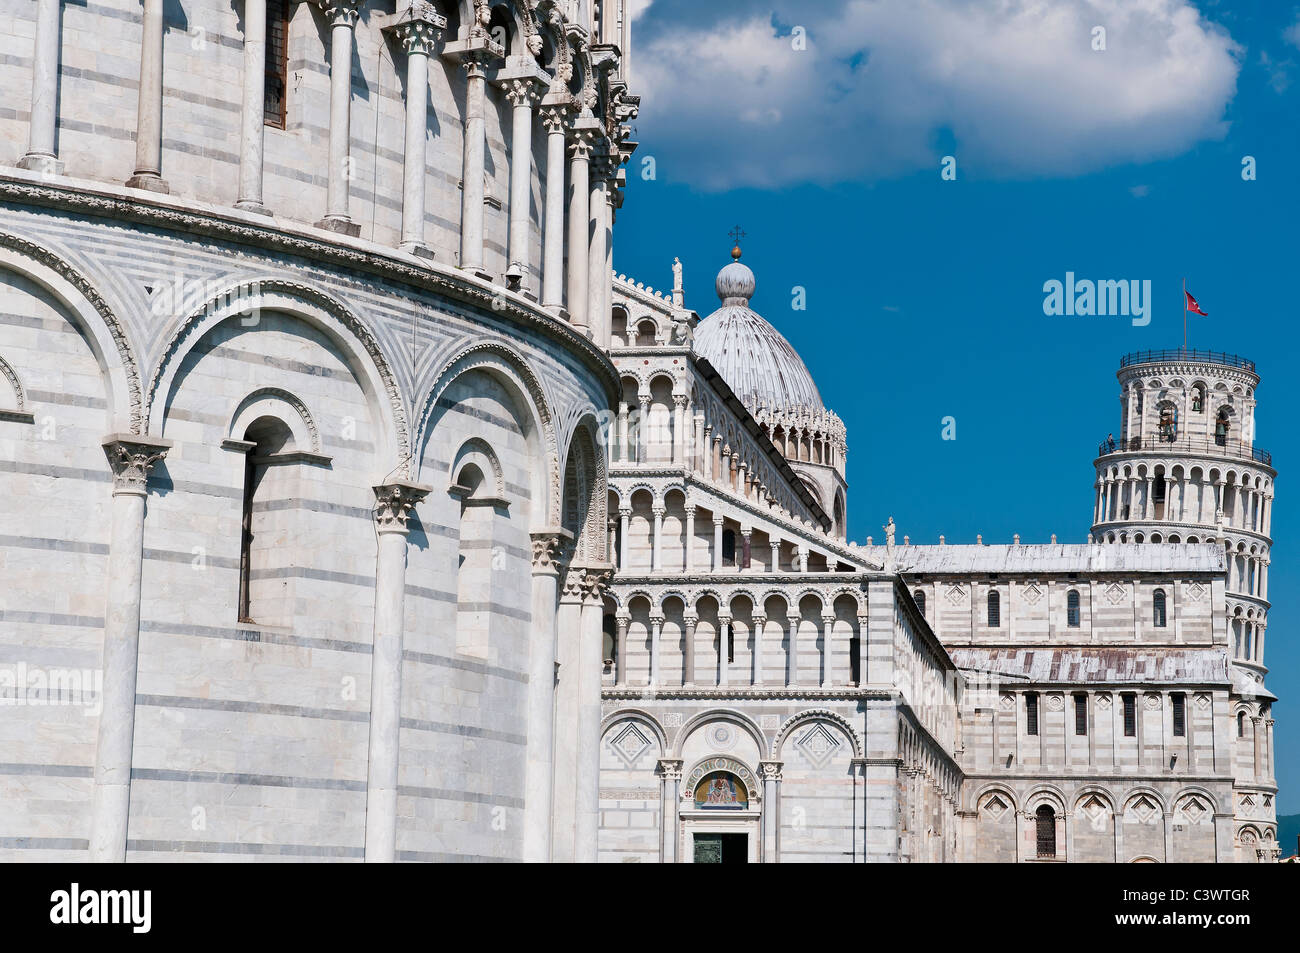 Vue sur le Baptistère, la cathédrale et la Tour de Pise, la Piazza del Duomo (Place de la cathédrale), Pise, Toscane, Italie Banque D'Images